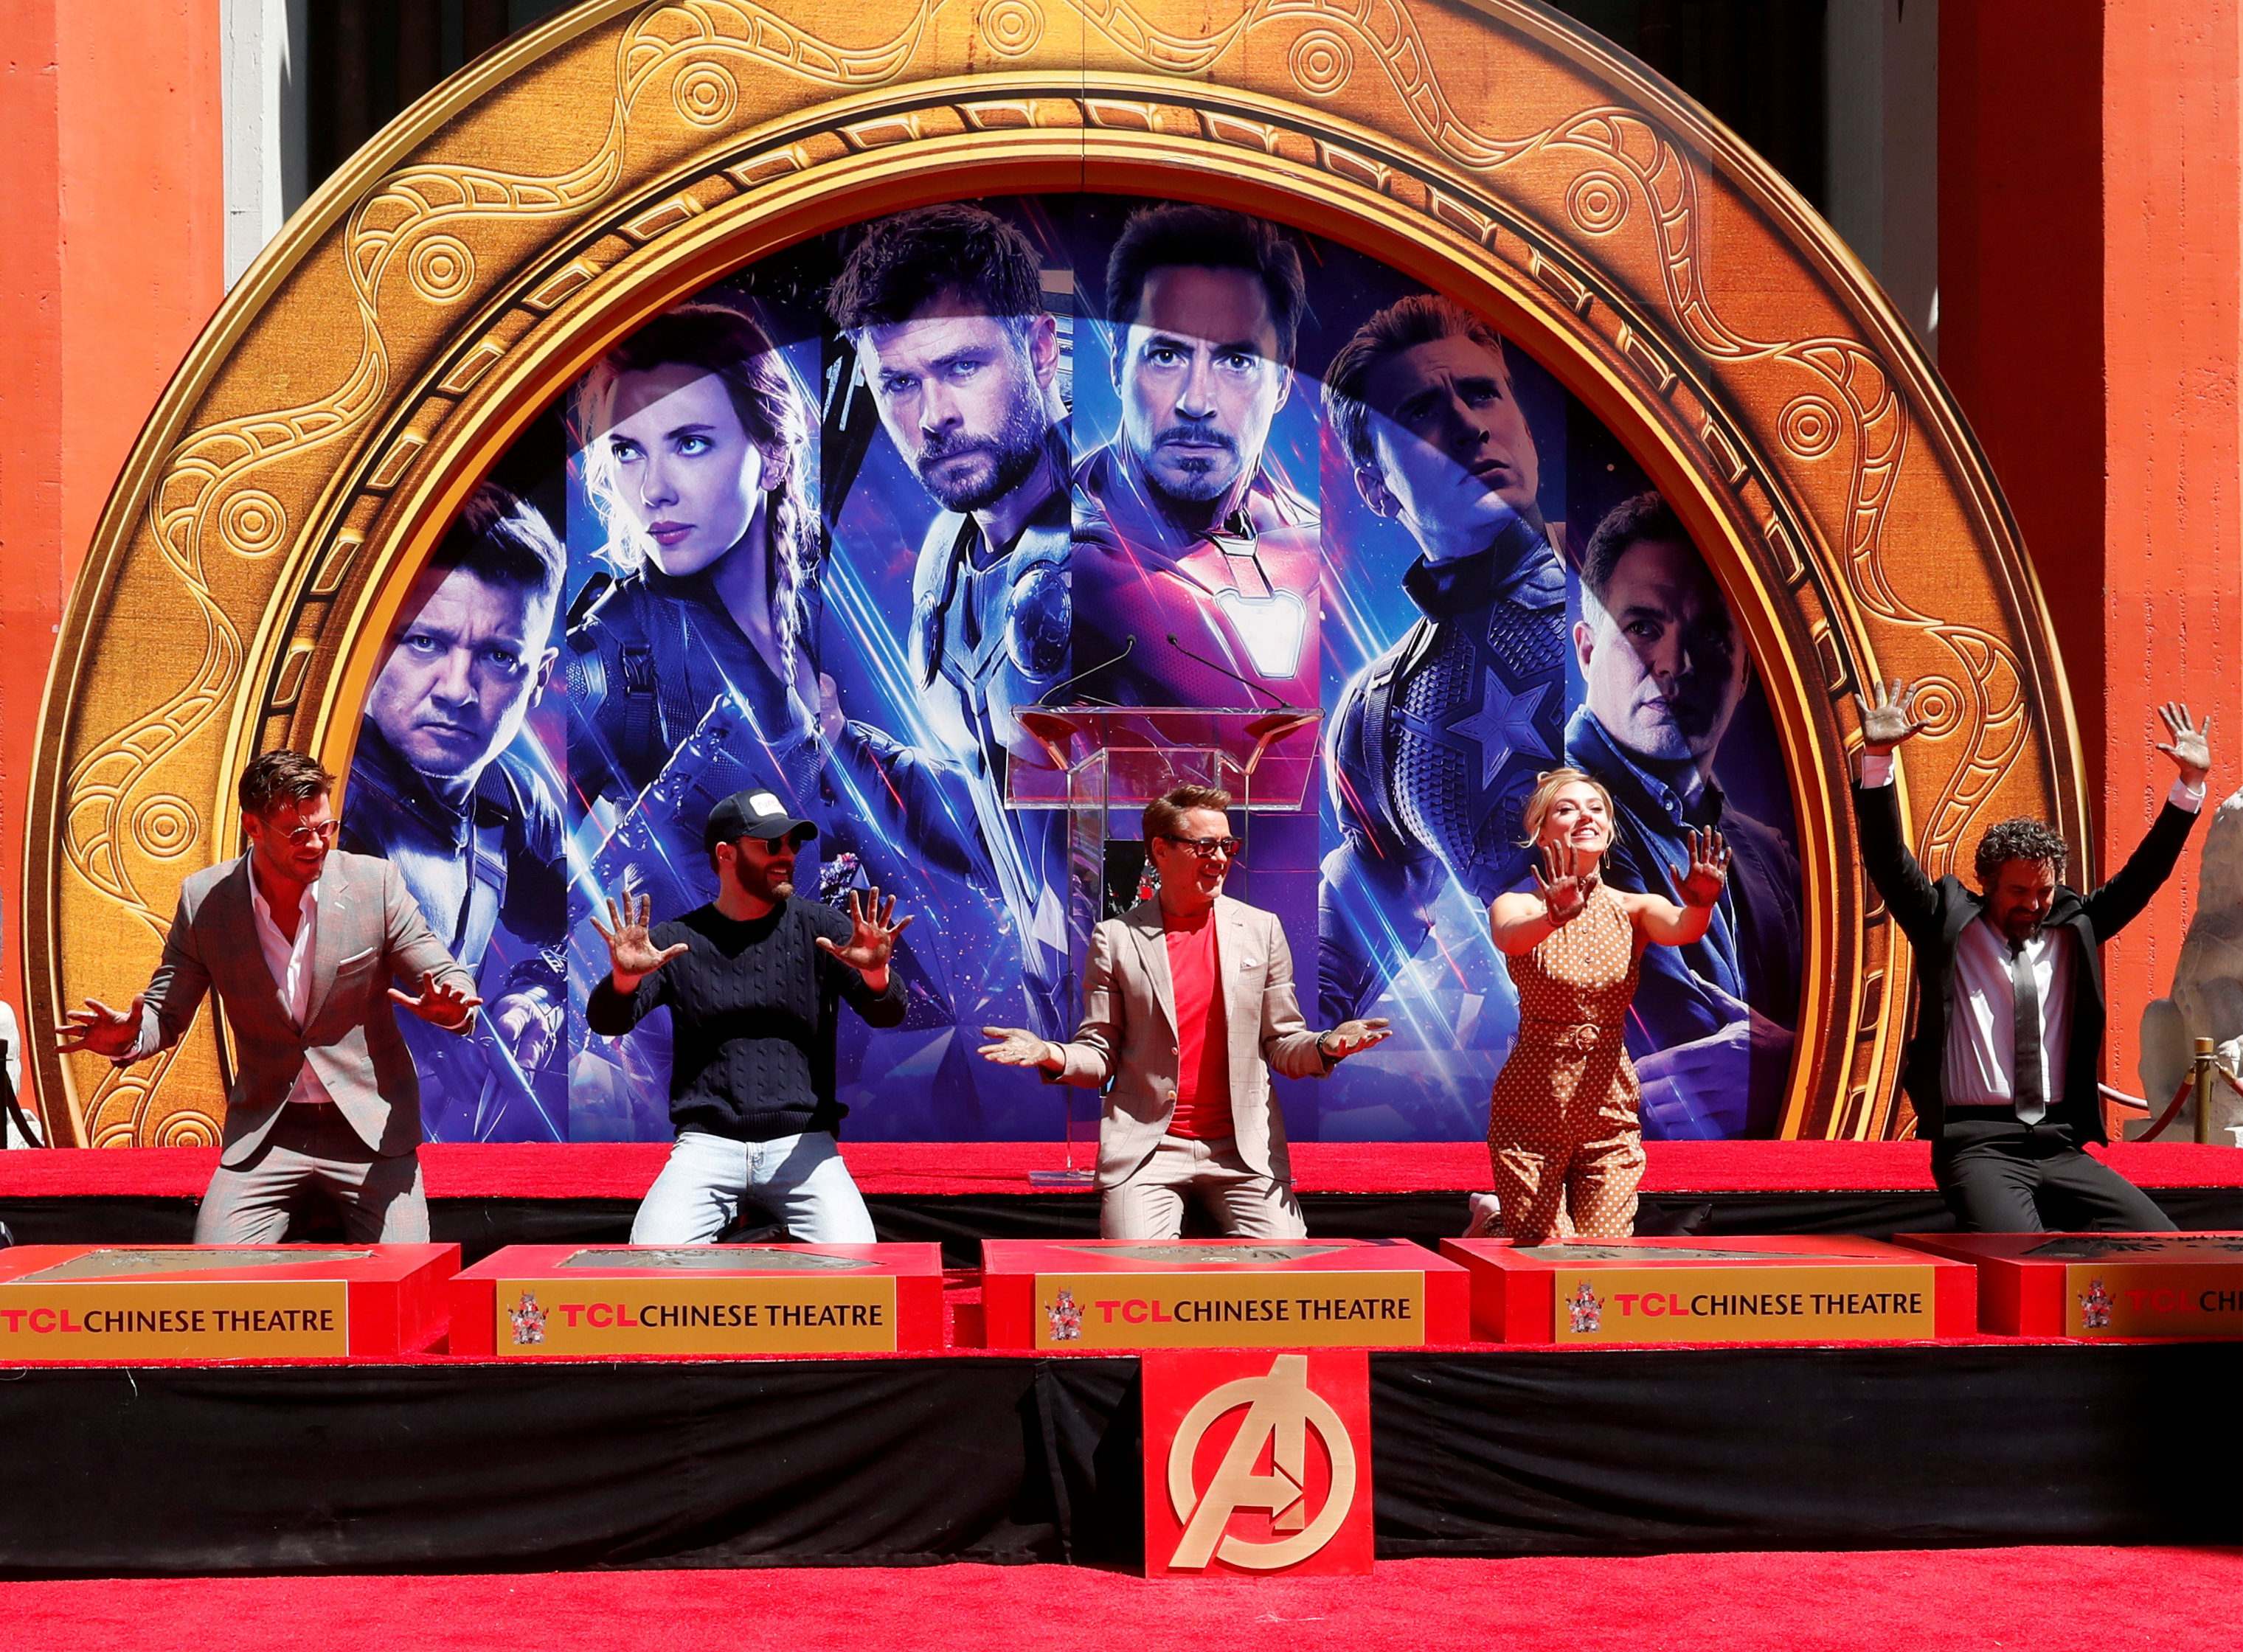 Actores de “Avengers: Endgame” dejan sus huellas en el Paseo de la Fama de Hollywood (Fotos)